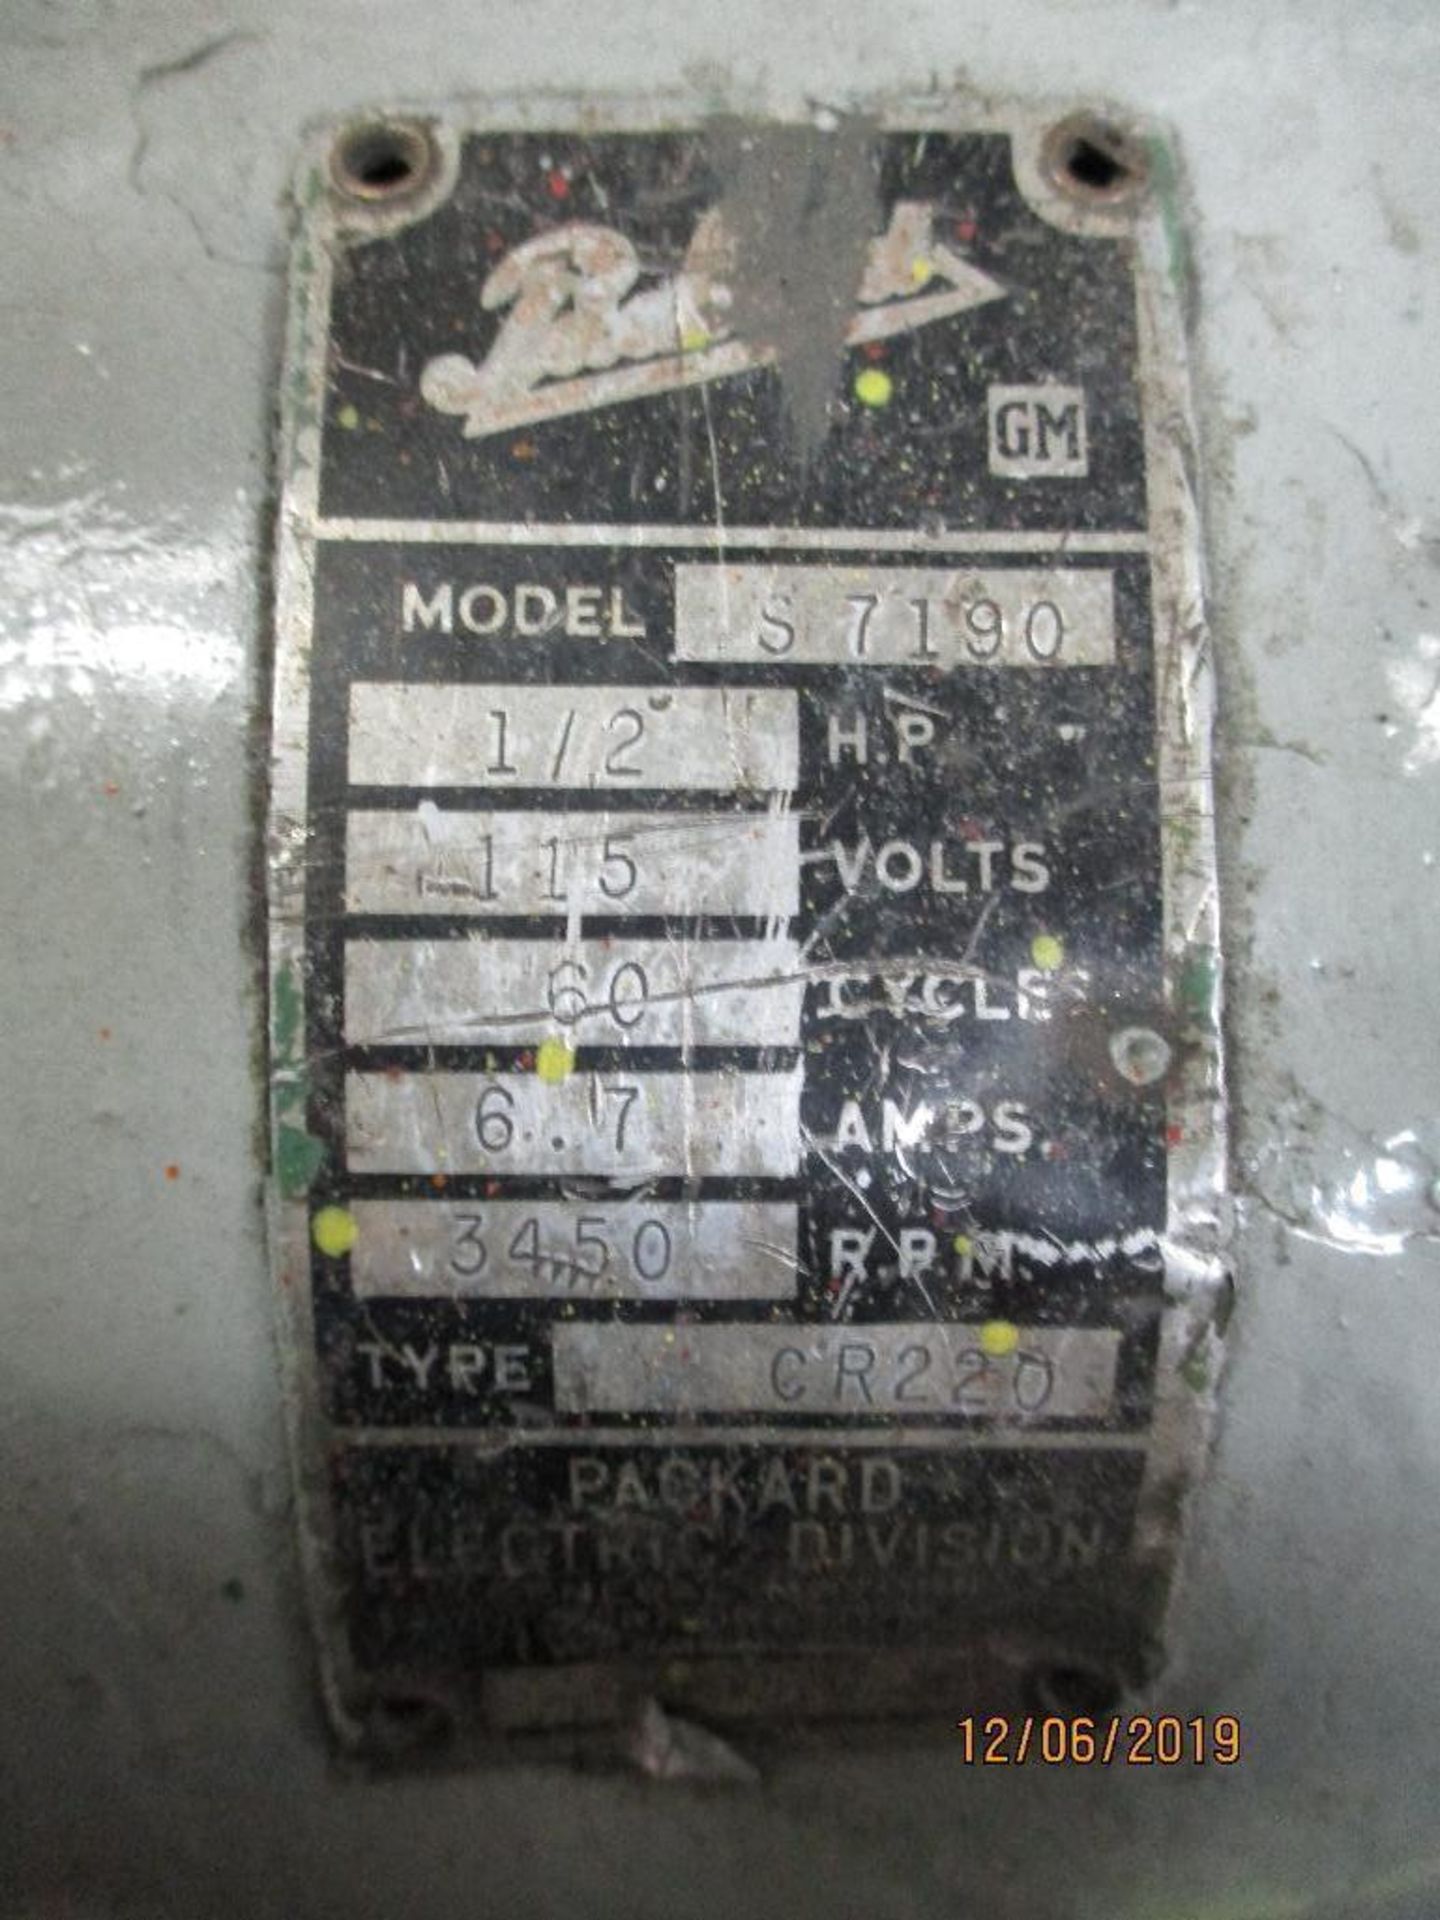 Packard Pedestal Grinder, 6" Disc, 1/2hp M/N S-7190 - Image 3 of 3